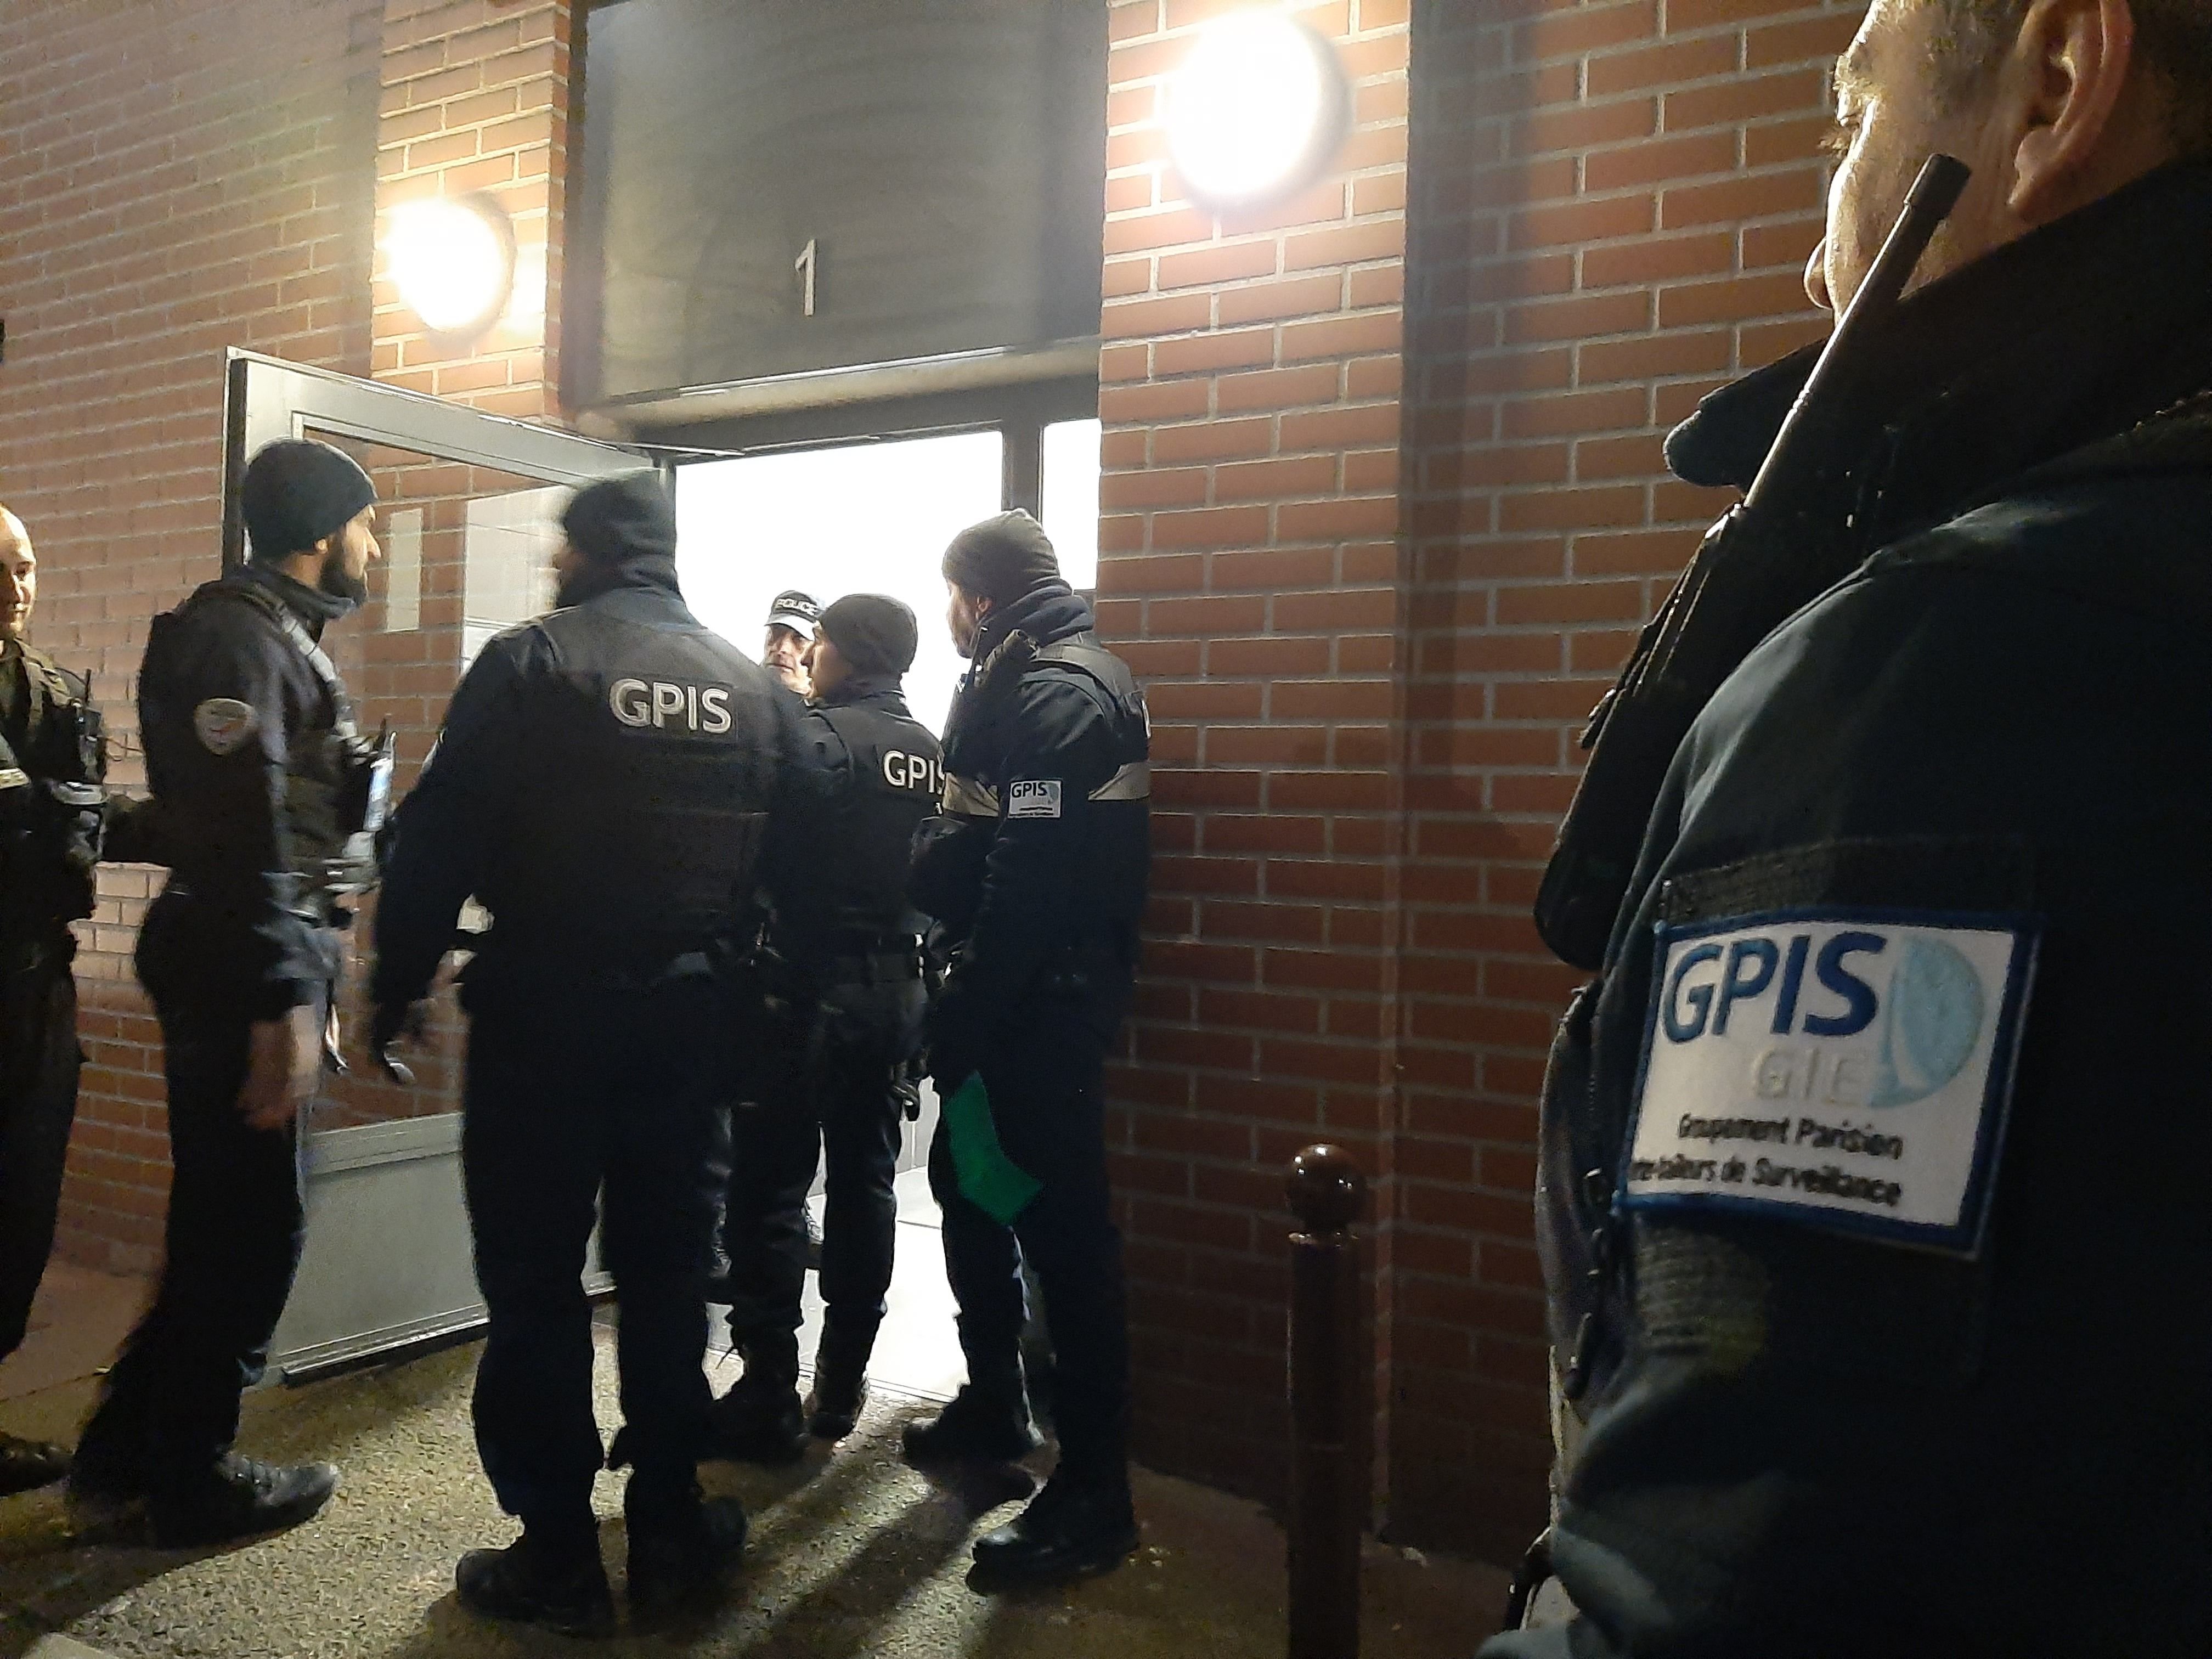 Charenton-le-Pont, le 13 décembre. Les agents du GPIS patrouillent dans la Villa Bergerac, épaulés ce soir-là par des fonctionnaires de police. LP/Marine Legrand